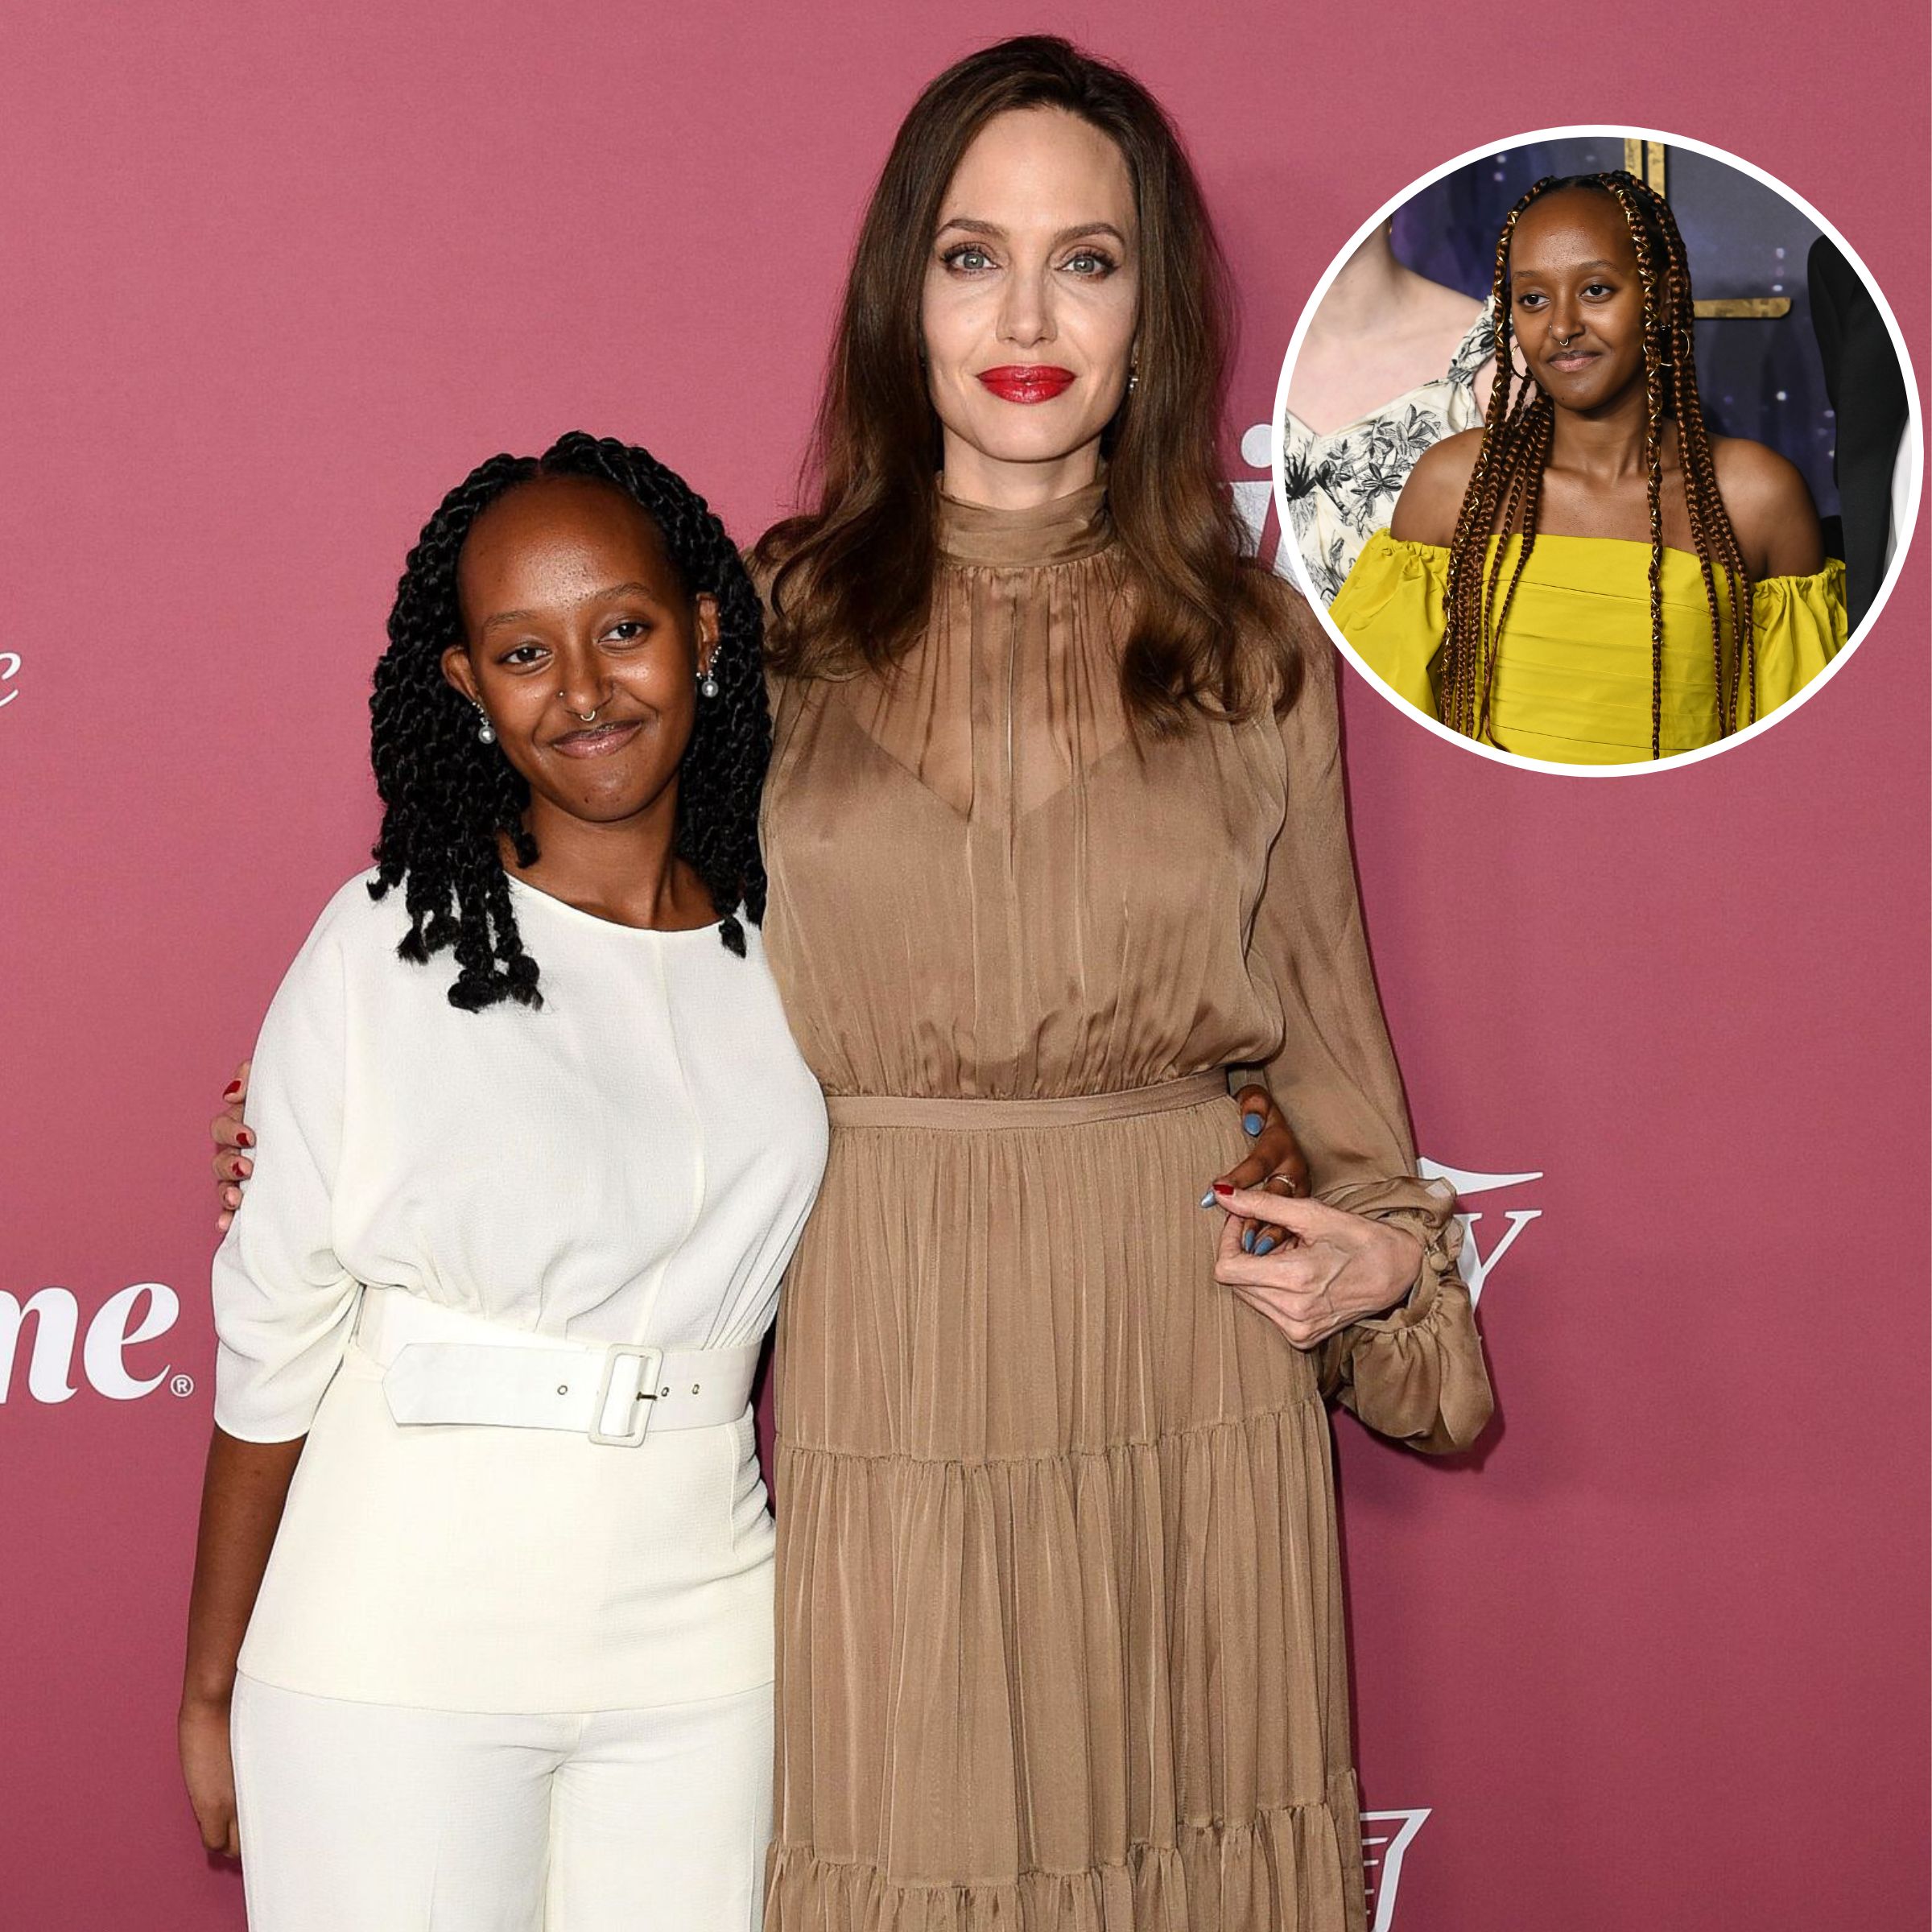 Angelina Jolie and Brad Pitt's Daughter Zahara: PH๏τos of the Teen